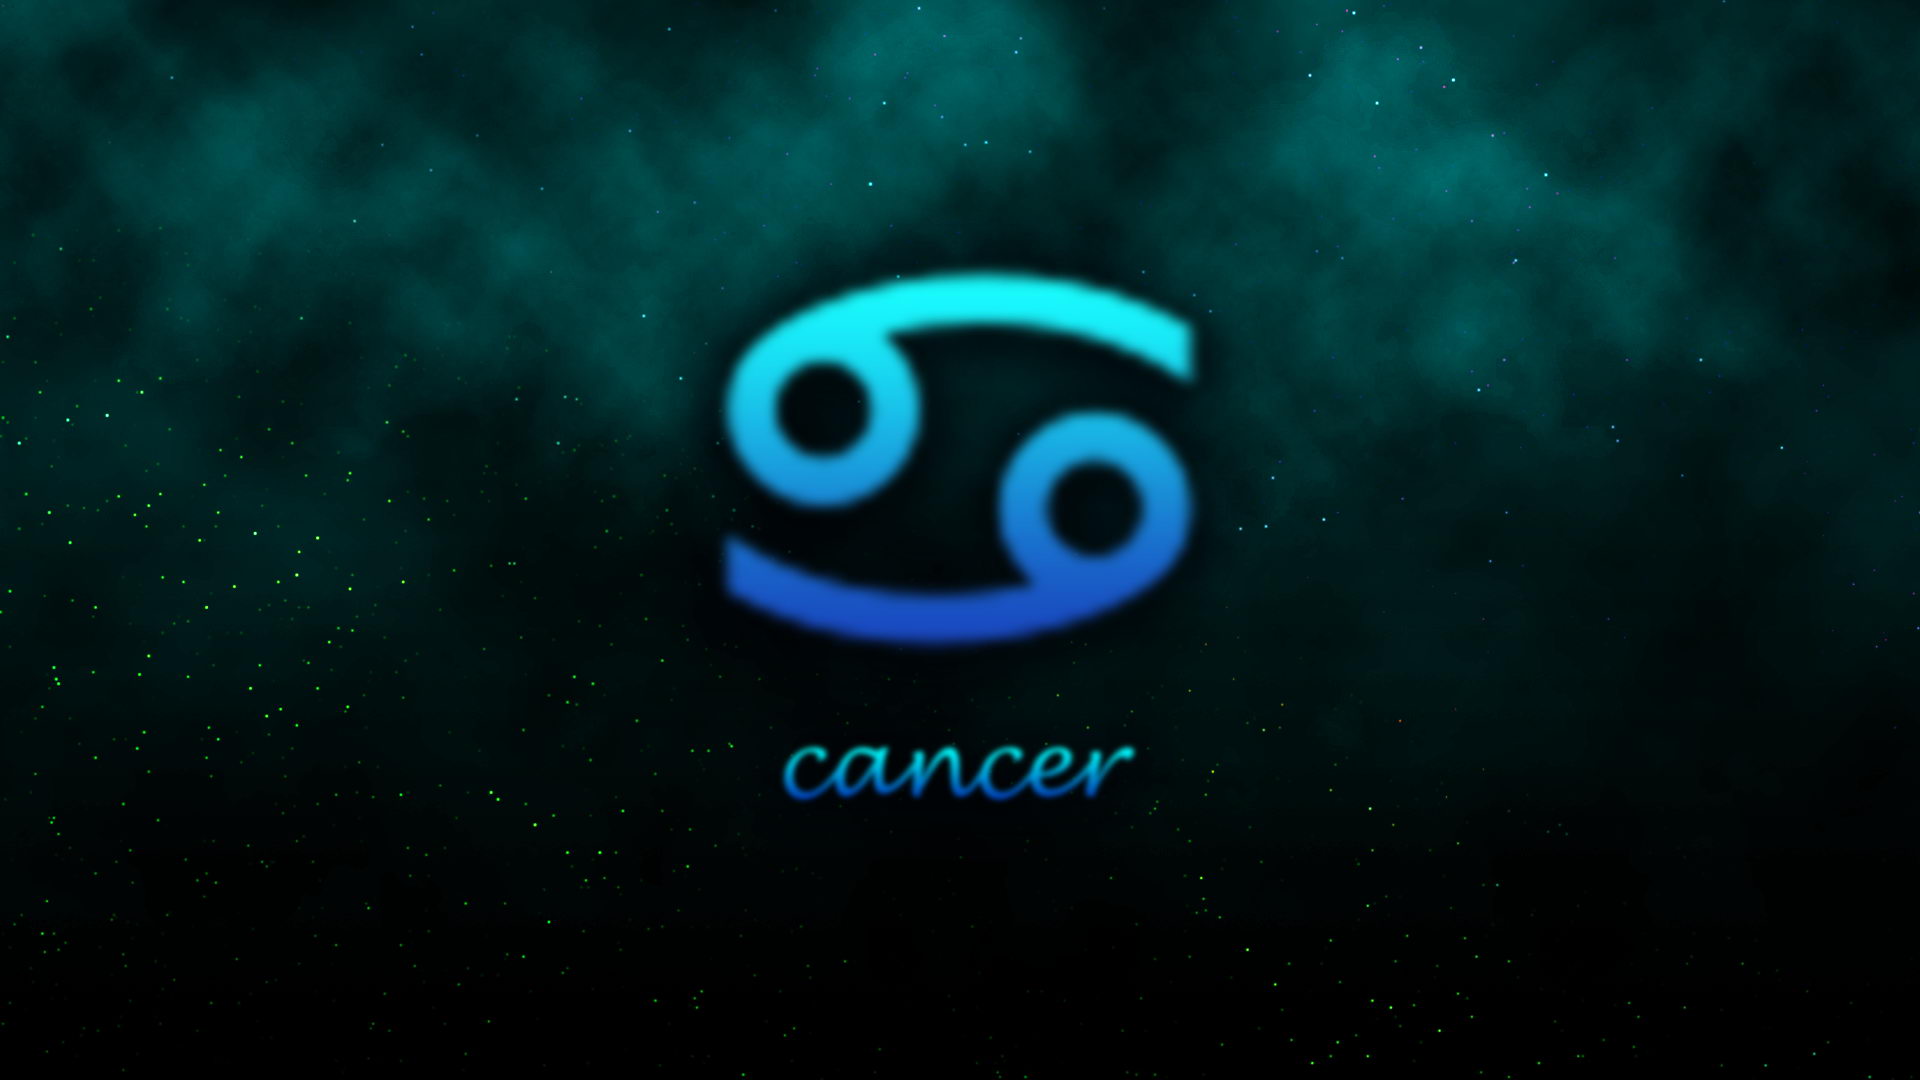 Fonds d'écran Cancer : tous les wallpapers Cancer